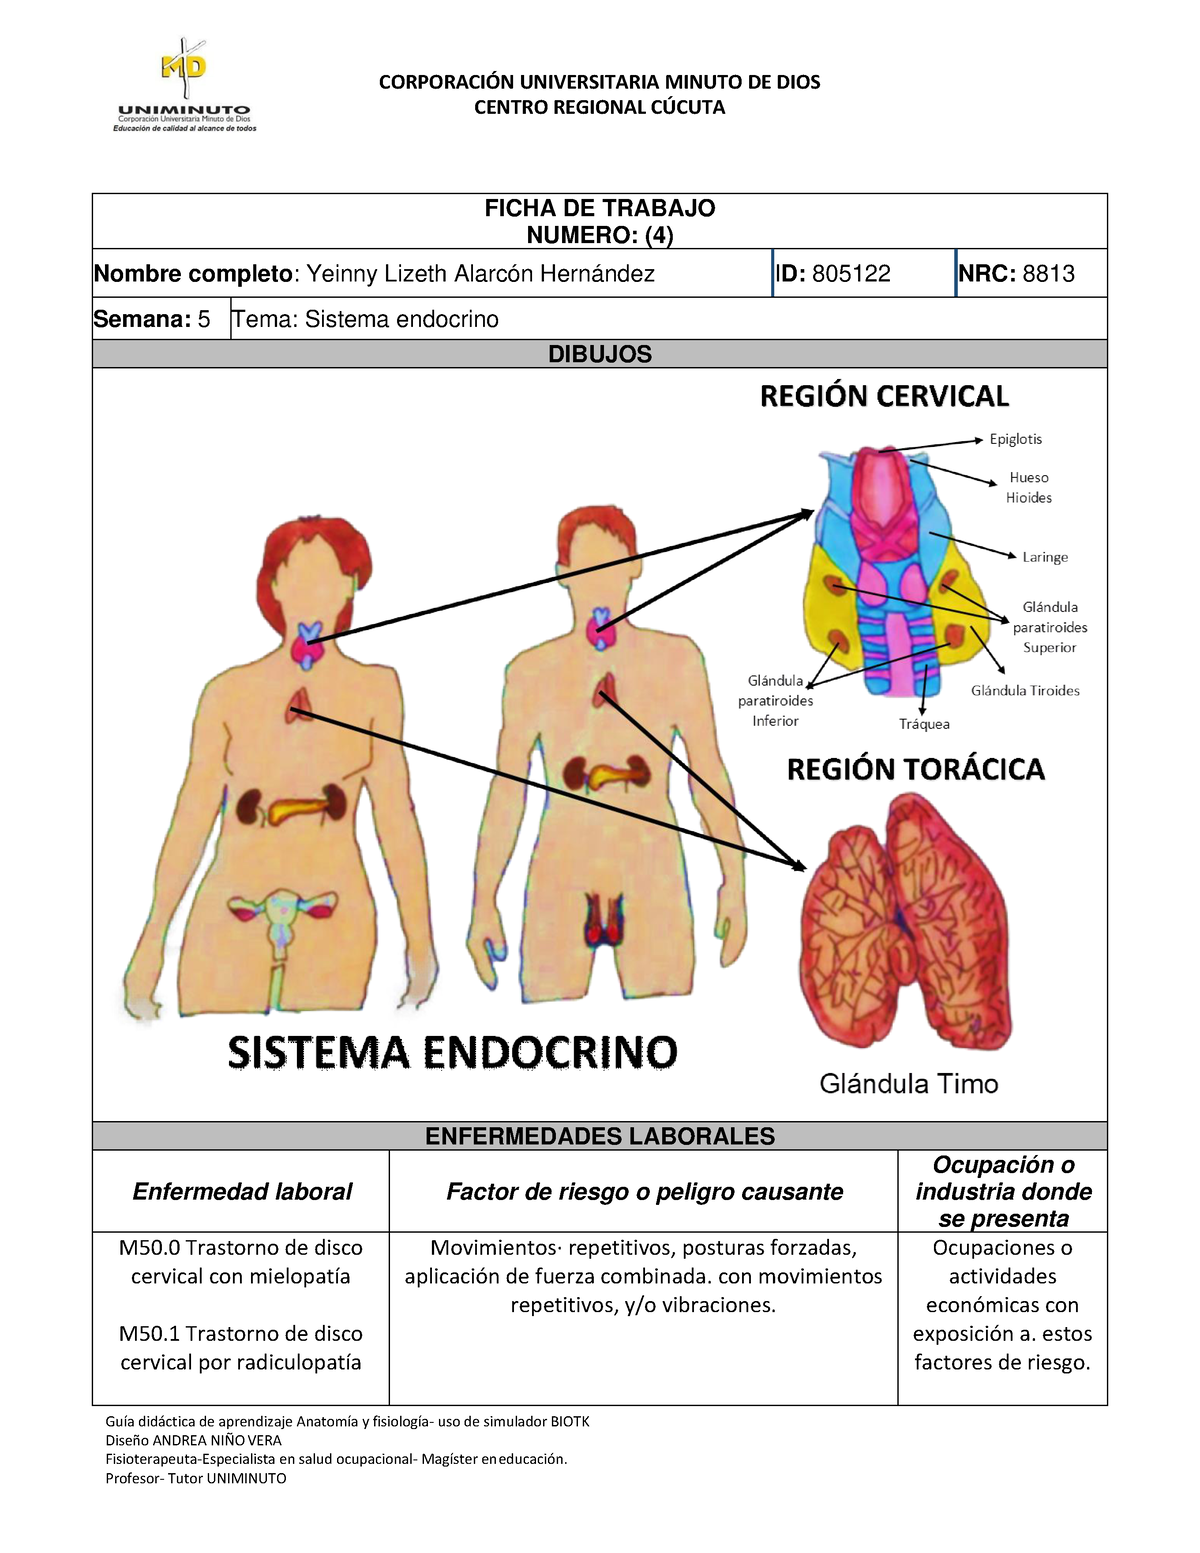 Yeinny sistema endocrino GuÌa didctica de aprendizaje AnatomÌa y fisiologÌa uso de